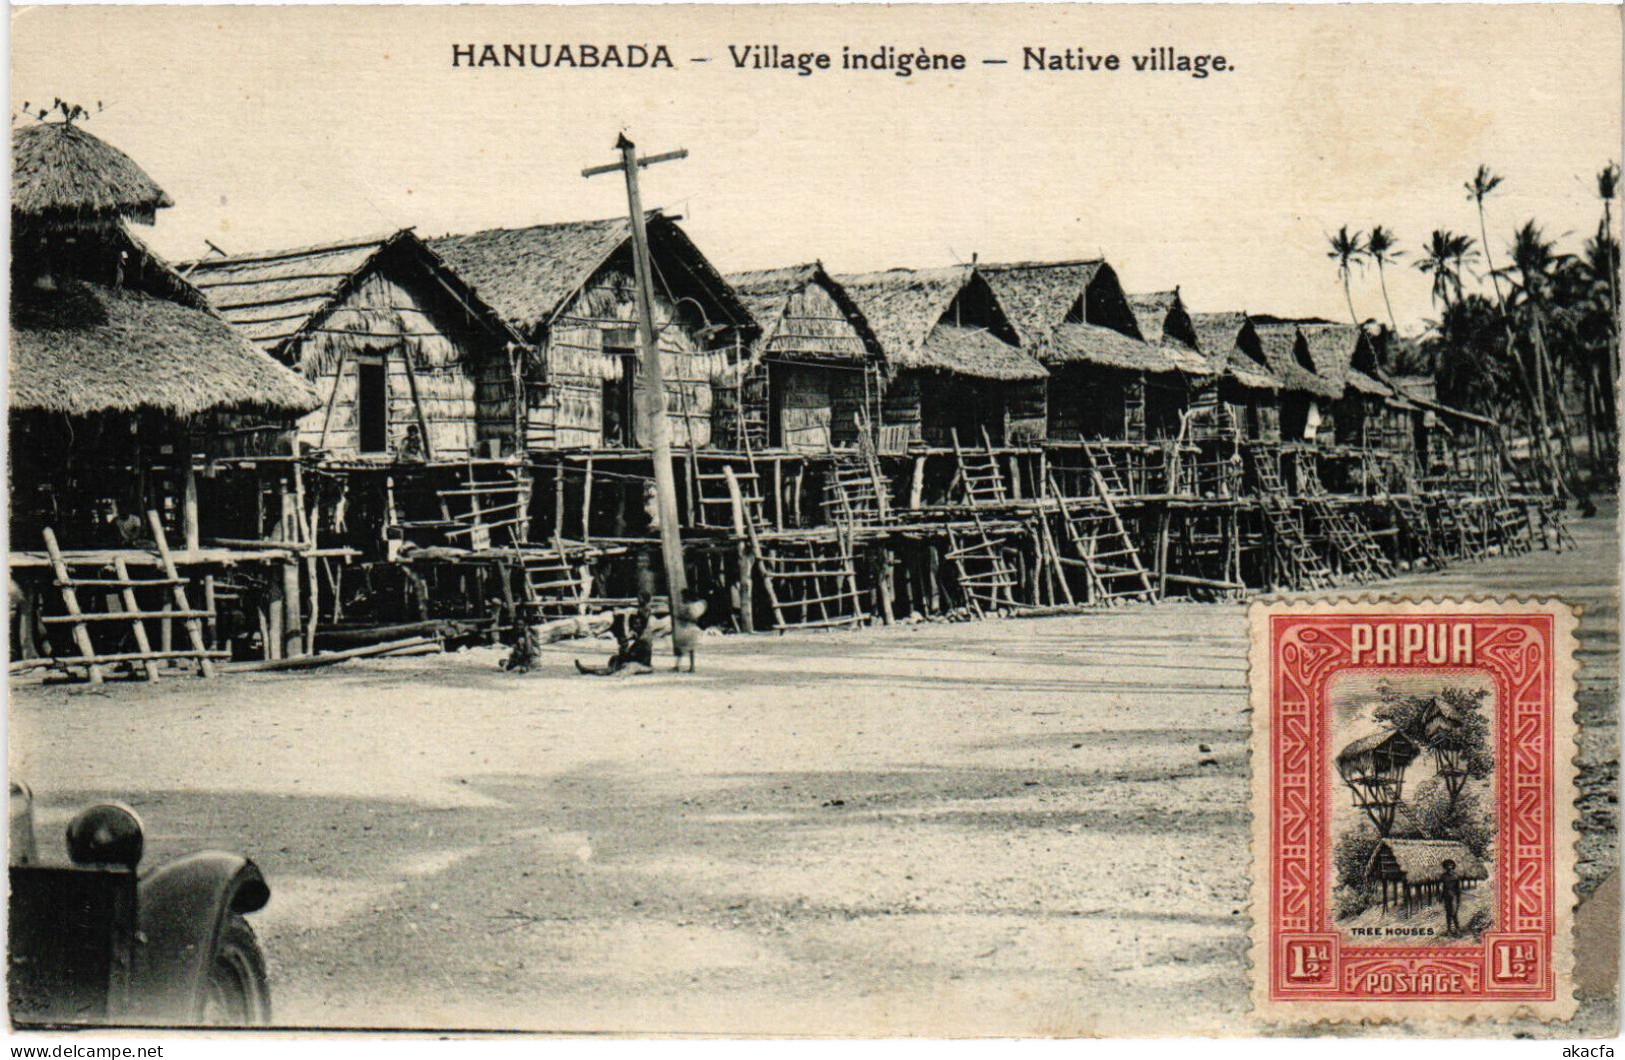 PC NEW GUINEA, HANUABADA, VILLAGE INDIGÉNE, Vintage Postcard (b53567) - Papouasie-Nouvelle-Guinée